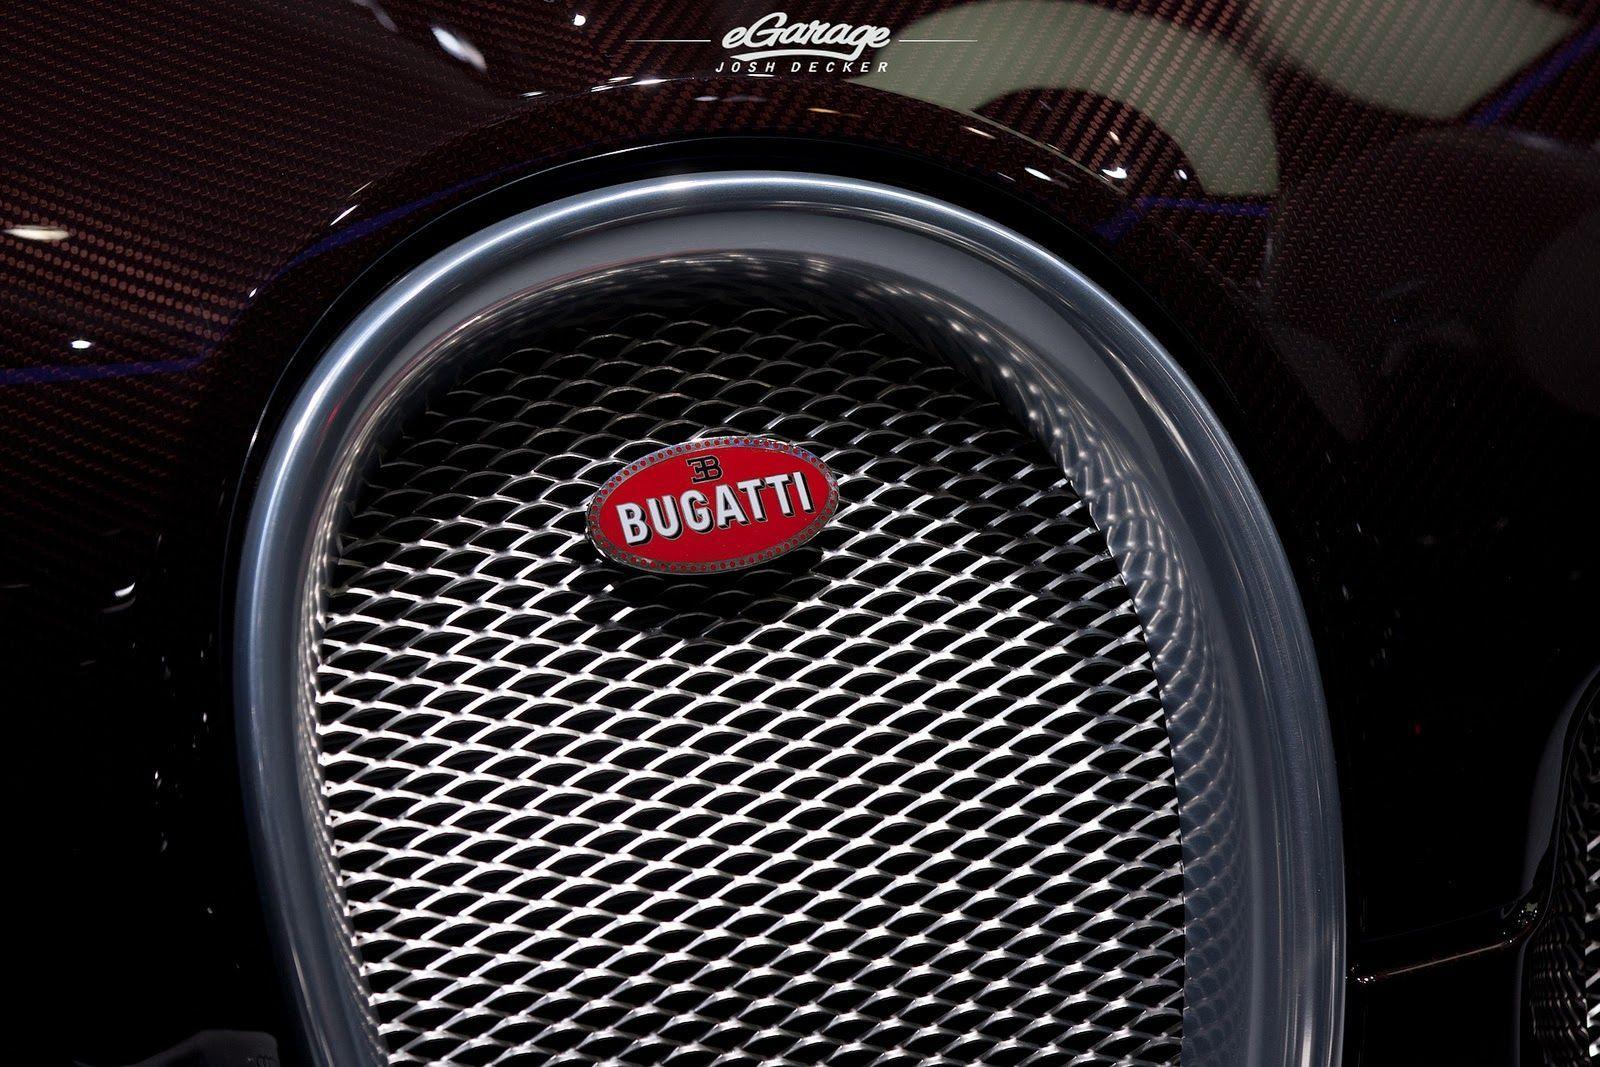 Bugatti Emblem. All Car Brands List. Logos, Car